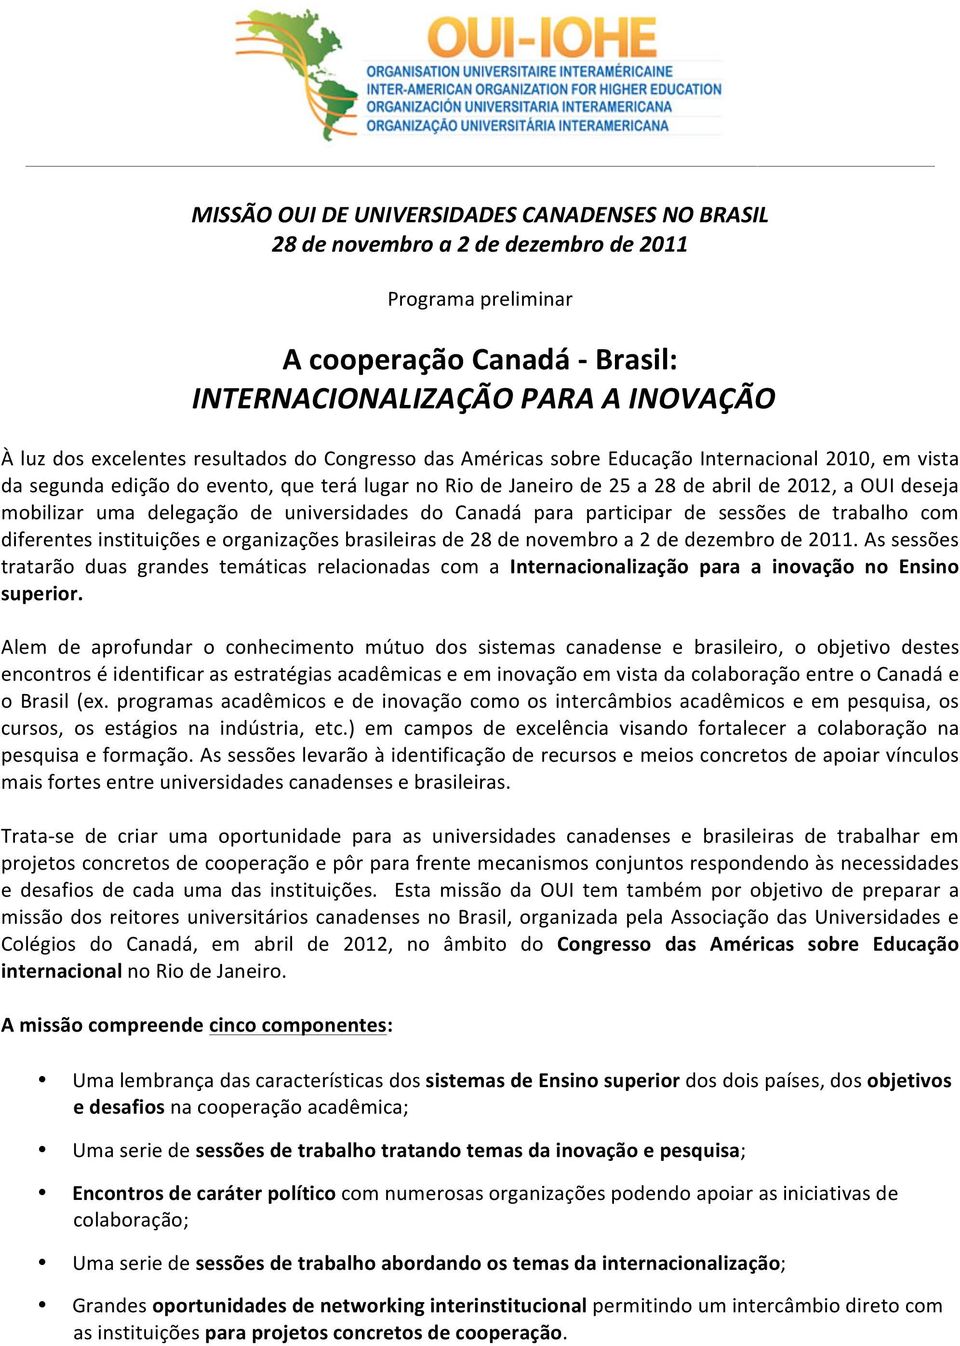 mobilizar uma delegação de universidades do Canadá para participar de sessões de trabalho com diferentes instituições e organizações brasileiras de 28 de novembro a 2 de dezembro de 2011.